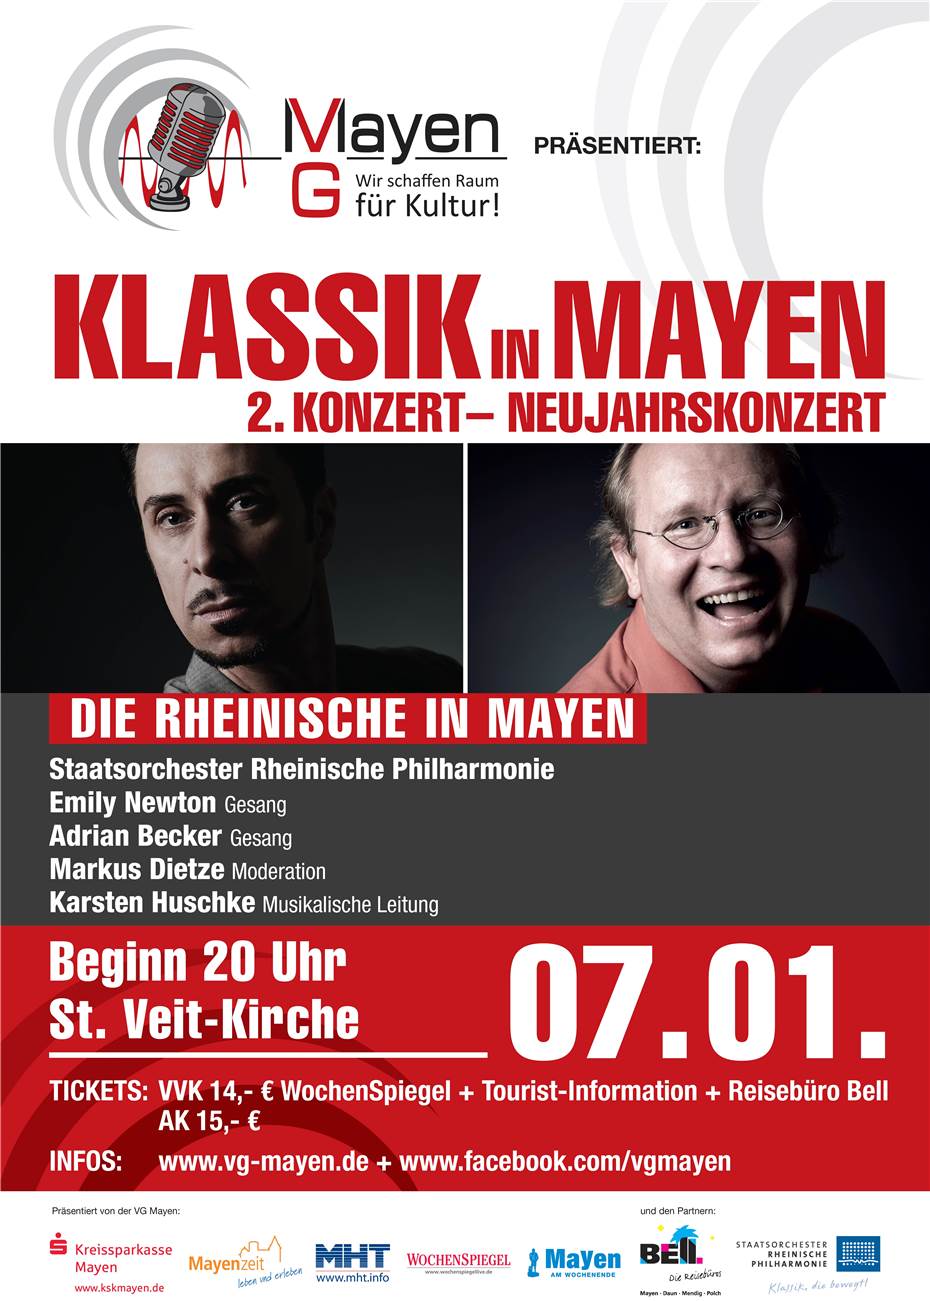 ‚Klassik in Mayen‘:
Zwei Konzerte im Januar!